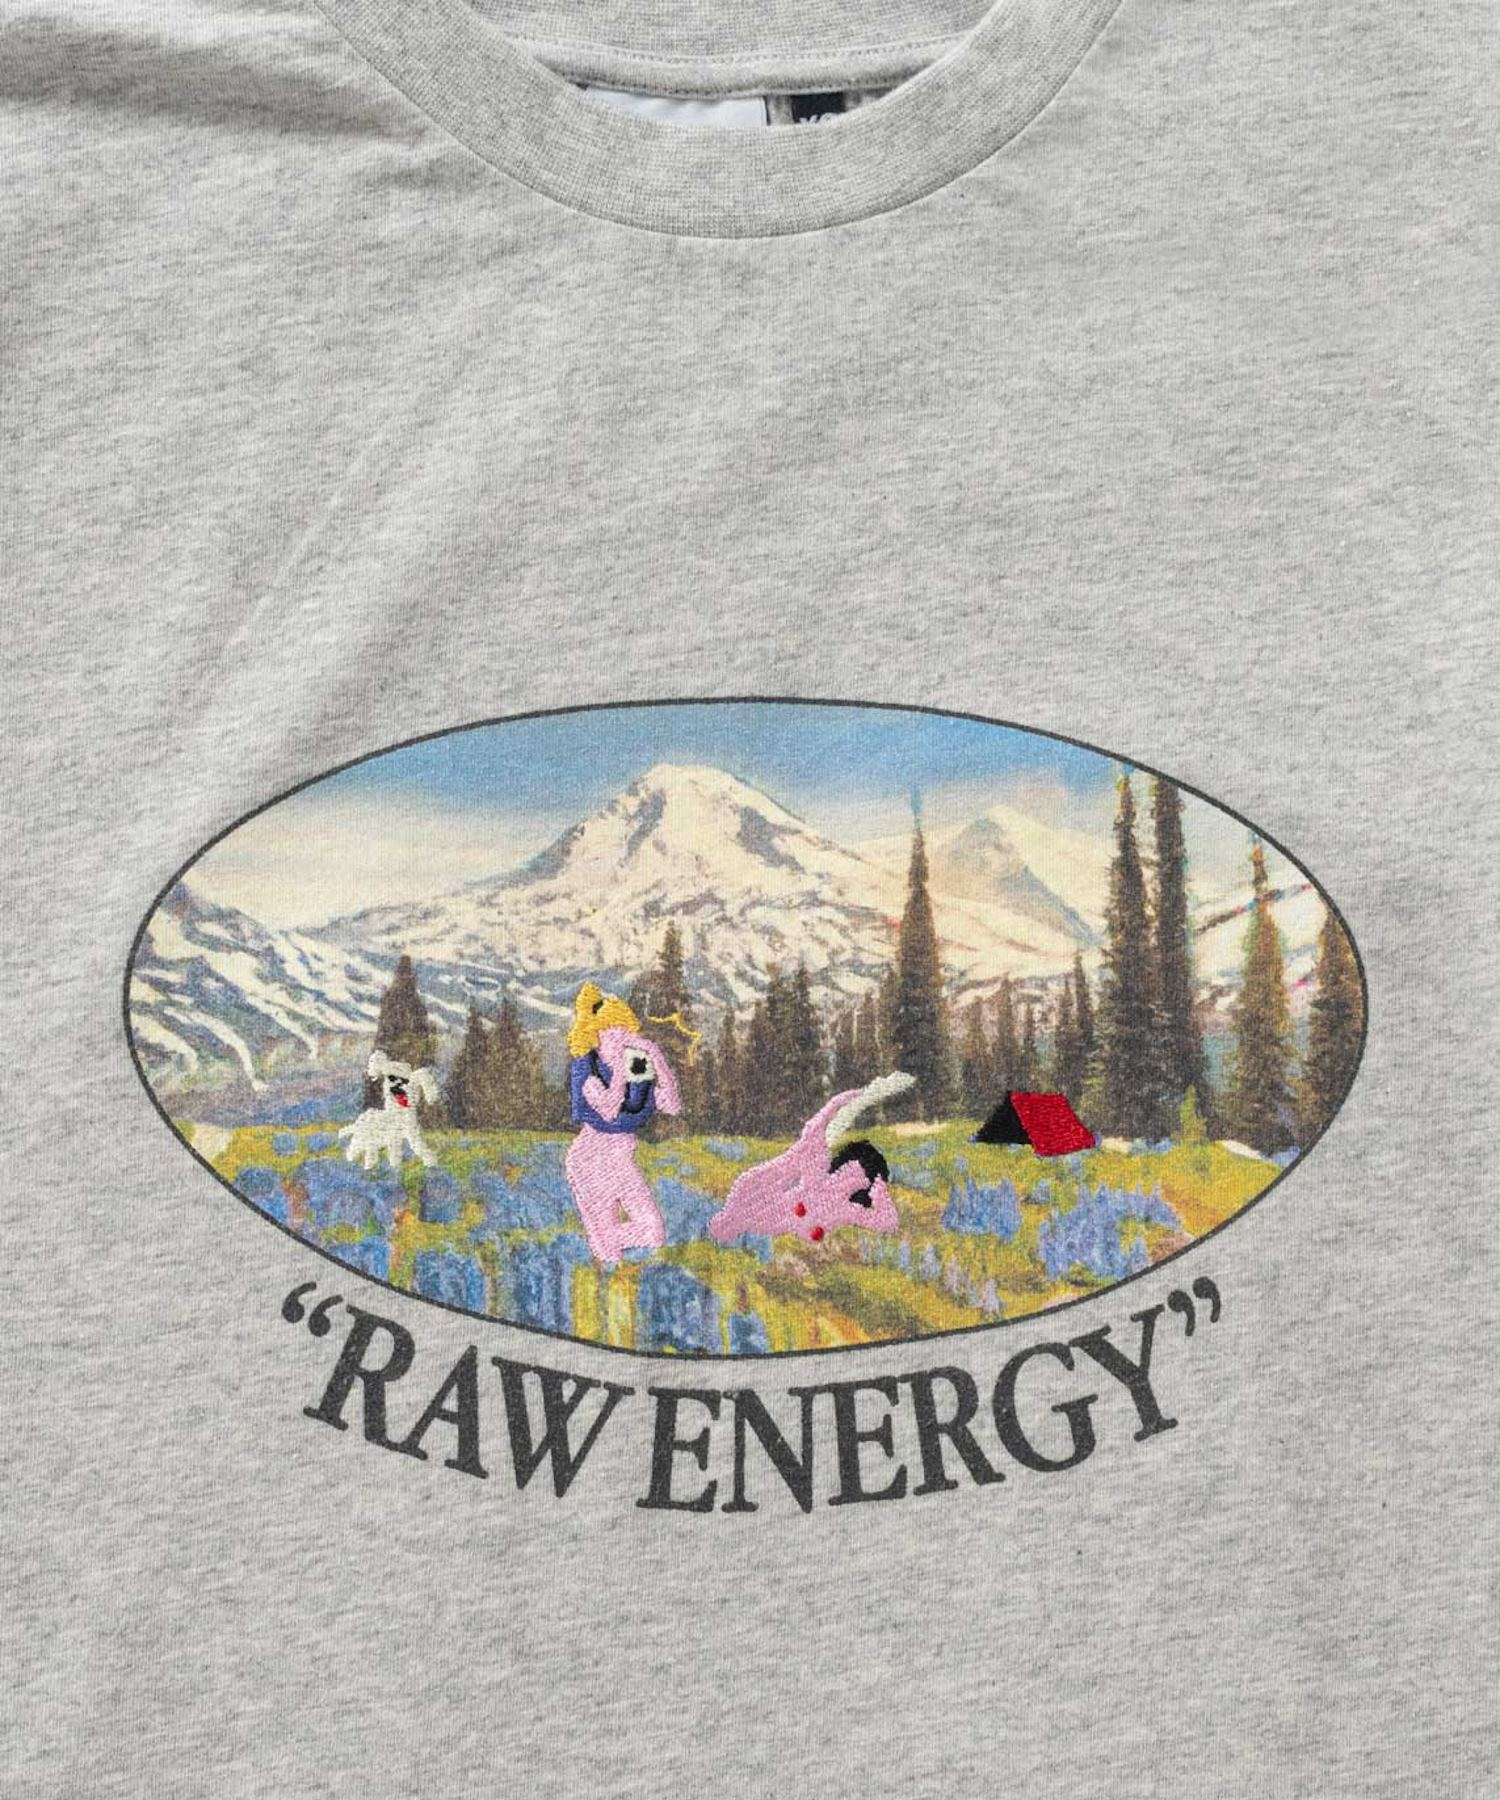 Raw Energy